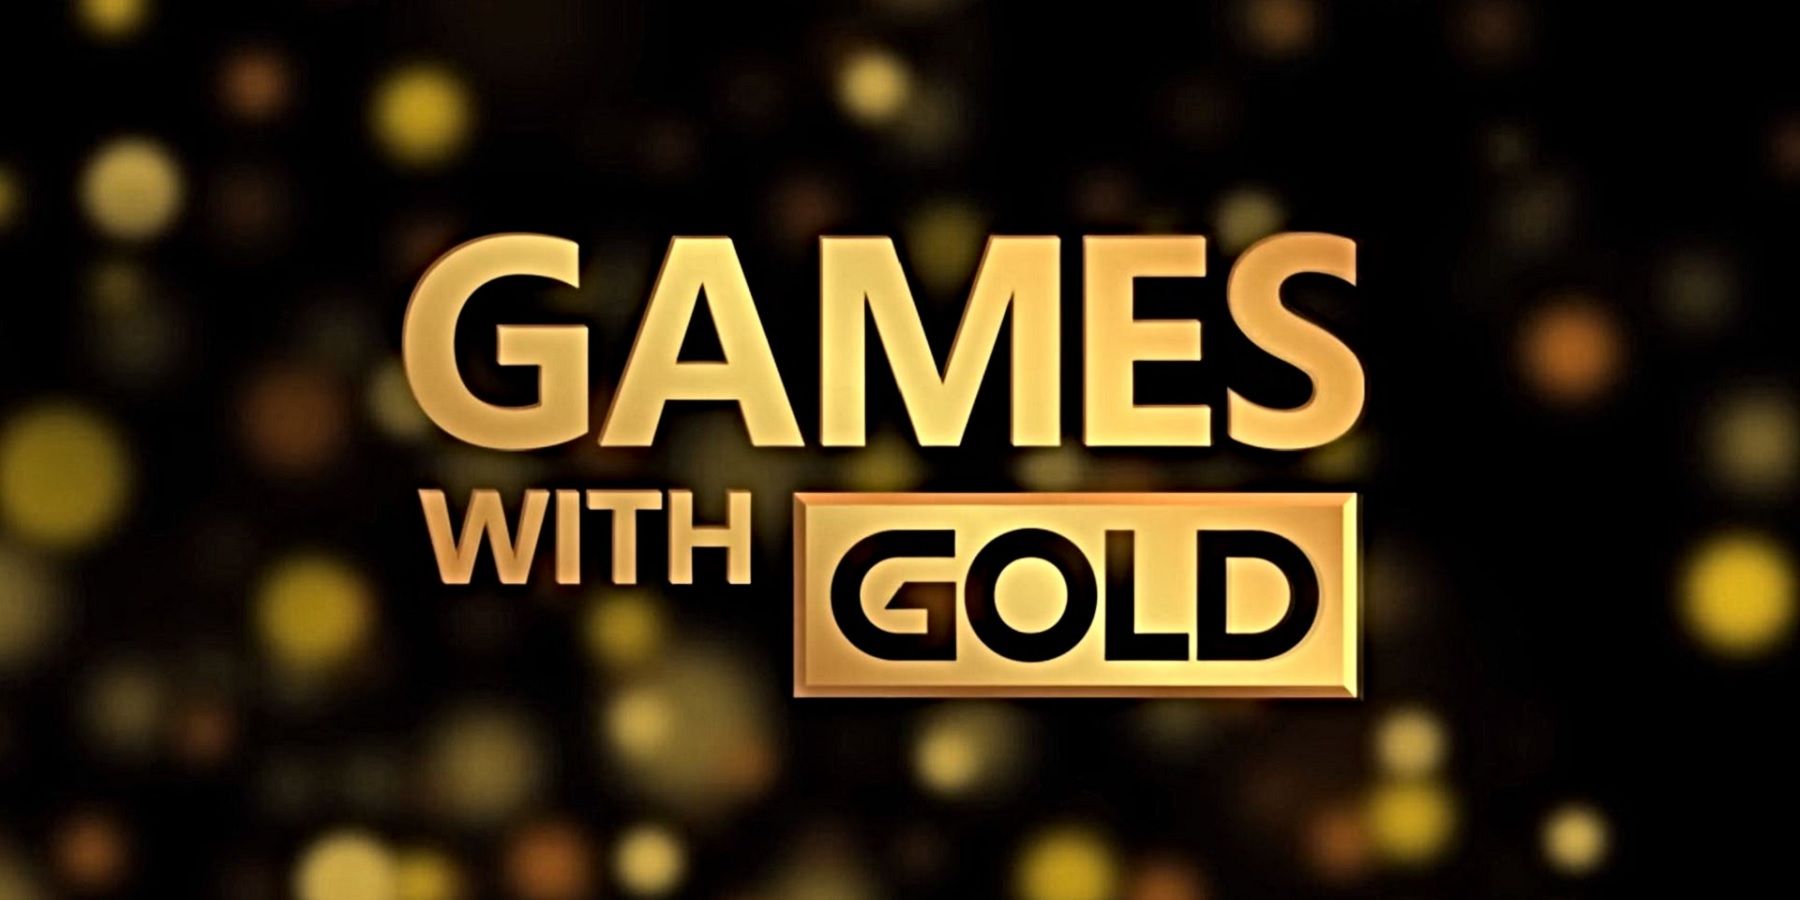 Juegos gratuitos de Xbox con oro para octubre de 2021 revelados